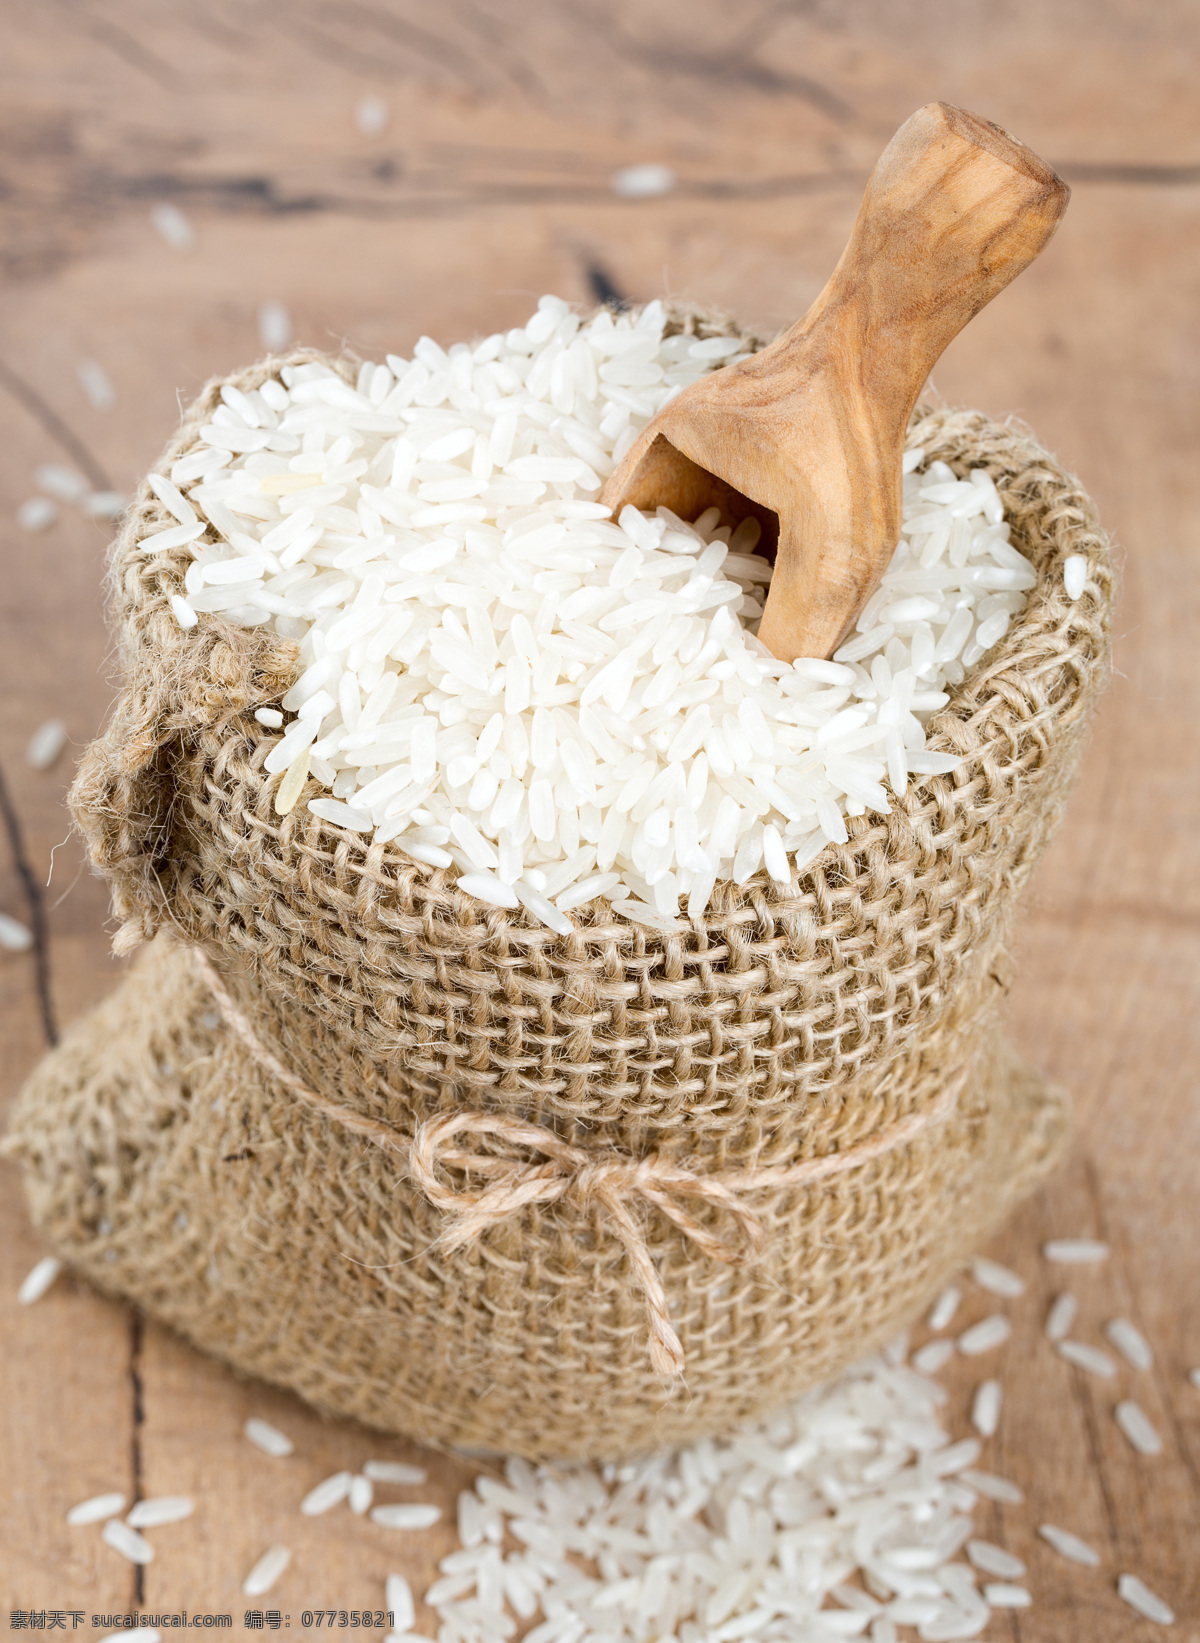 米袋 里 木勺 大米 粮食 稻米 白米 食材原料 美食图片 餐饮美食